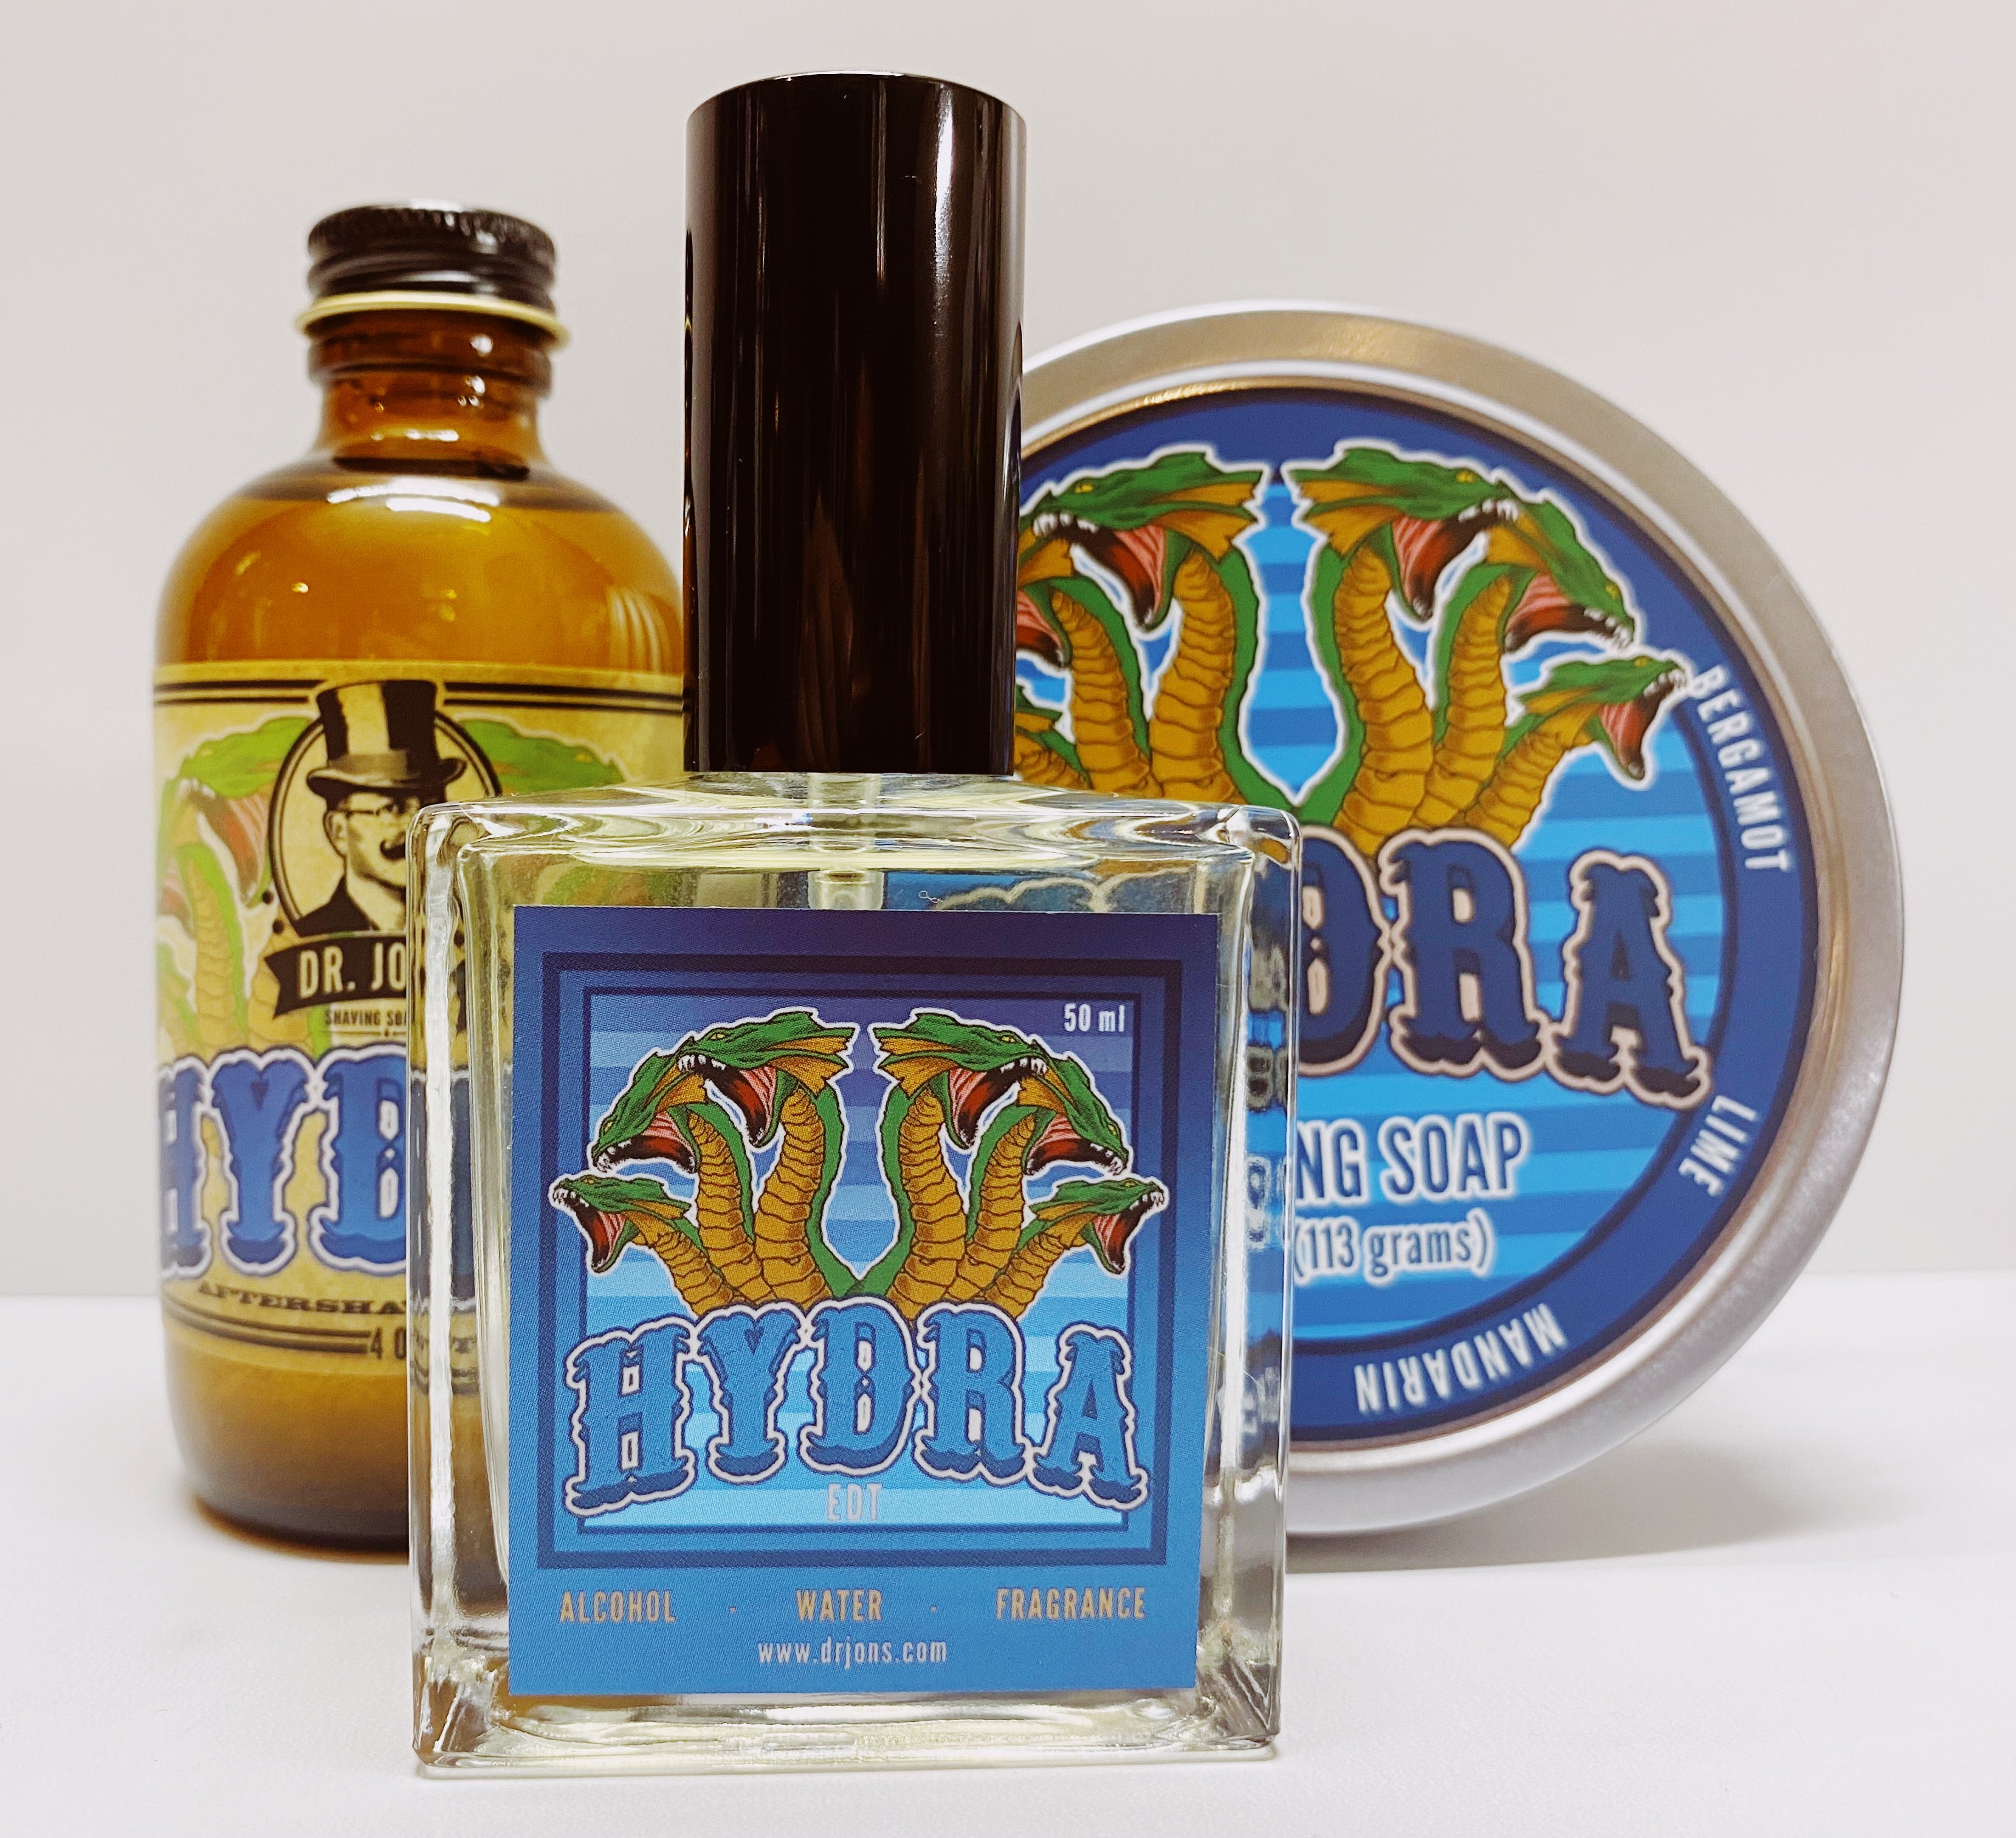 Dr. Jon's Hydra Vegan Shaving Soap Vol. 3